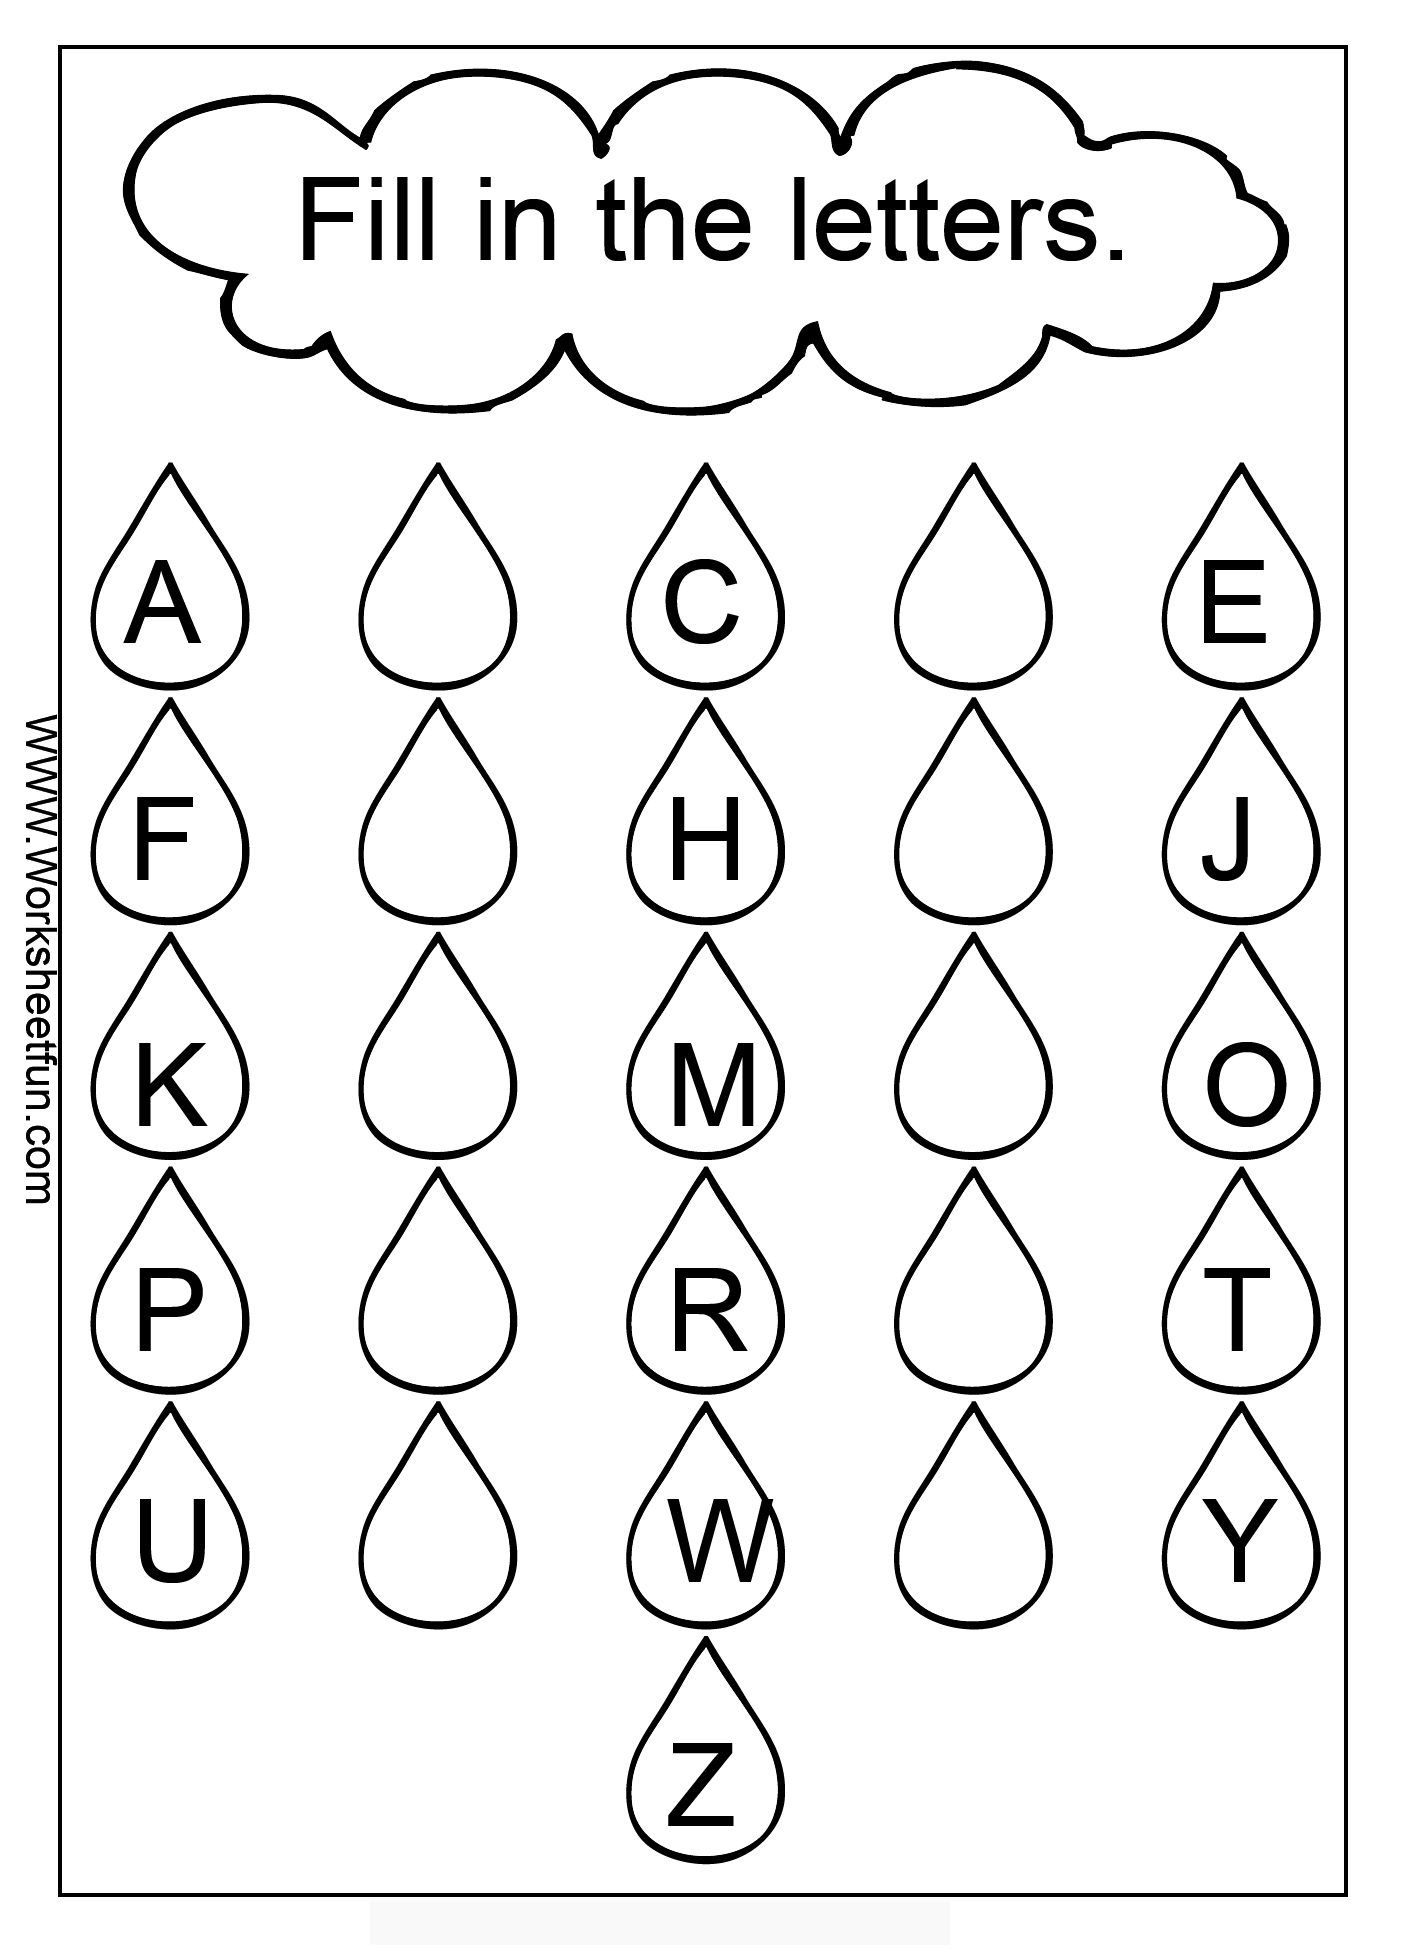 Kindergarten Worksheets Missing Letters Printables Image